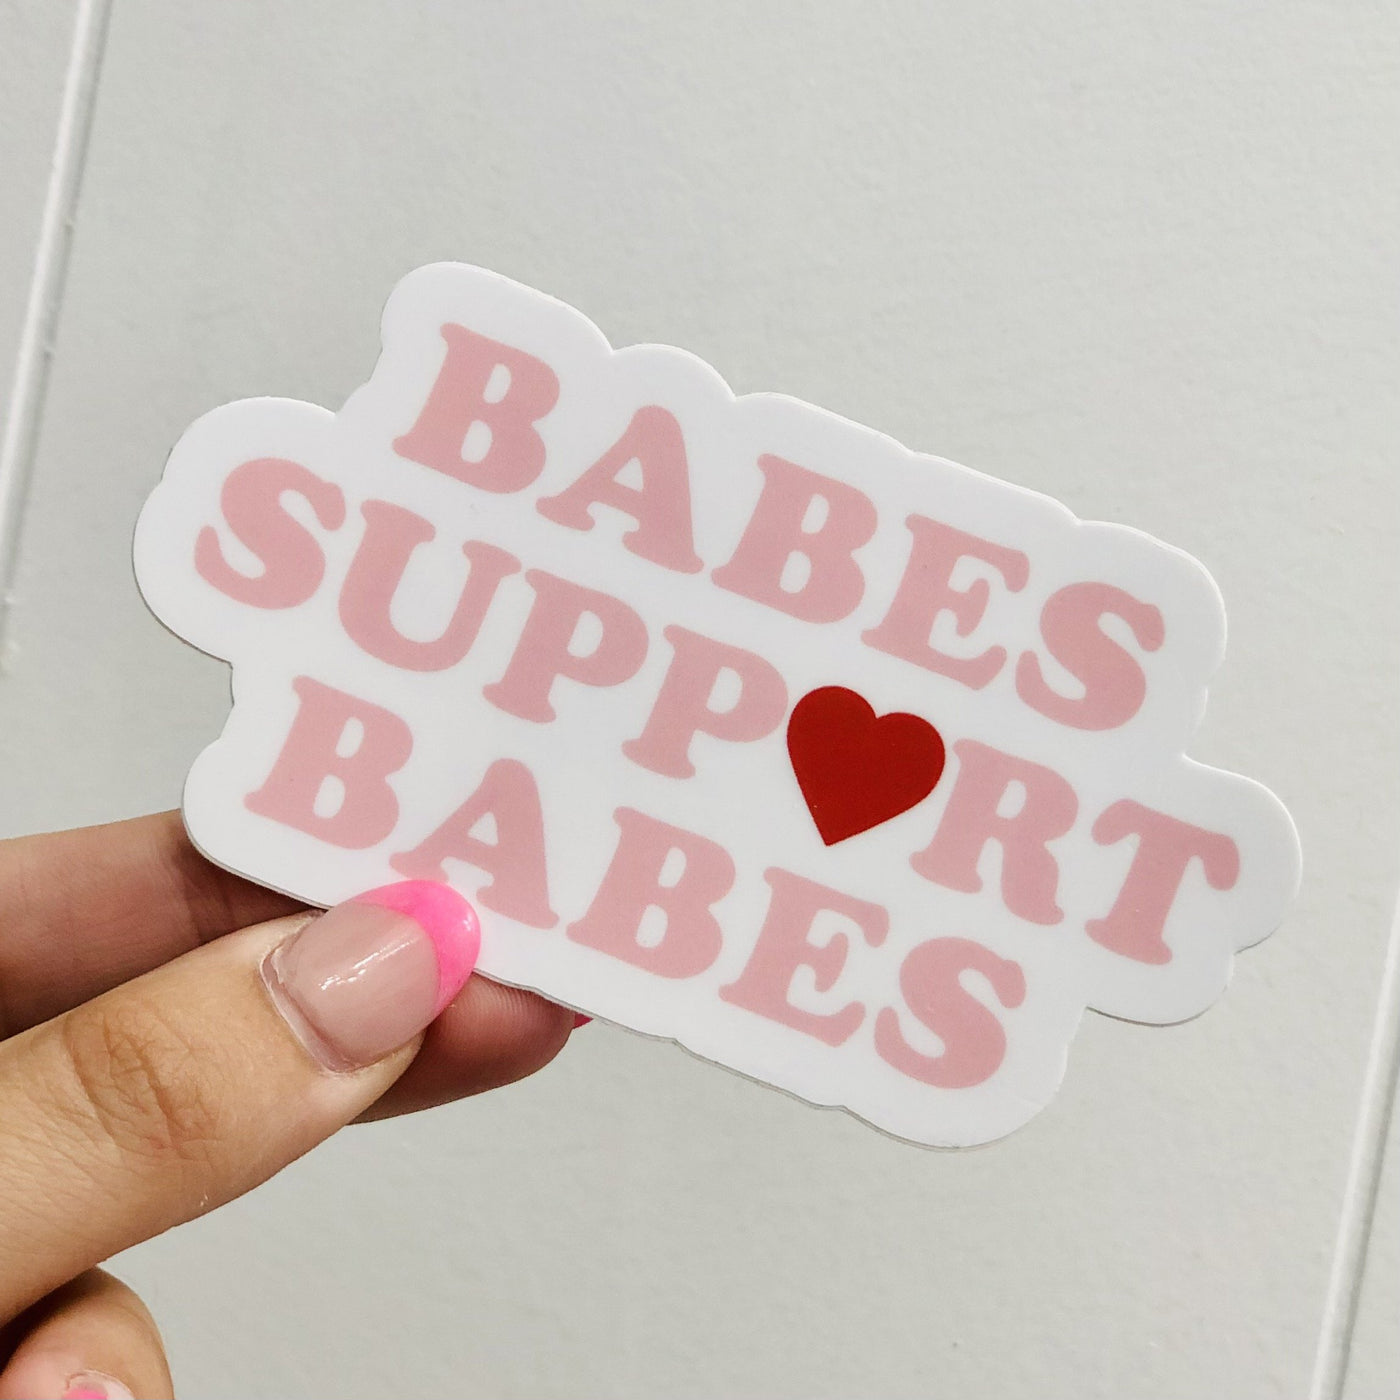 Babes Support Babes Sticker